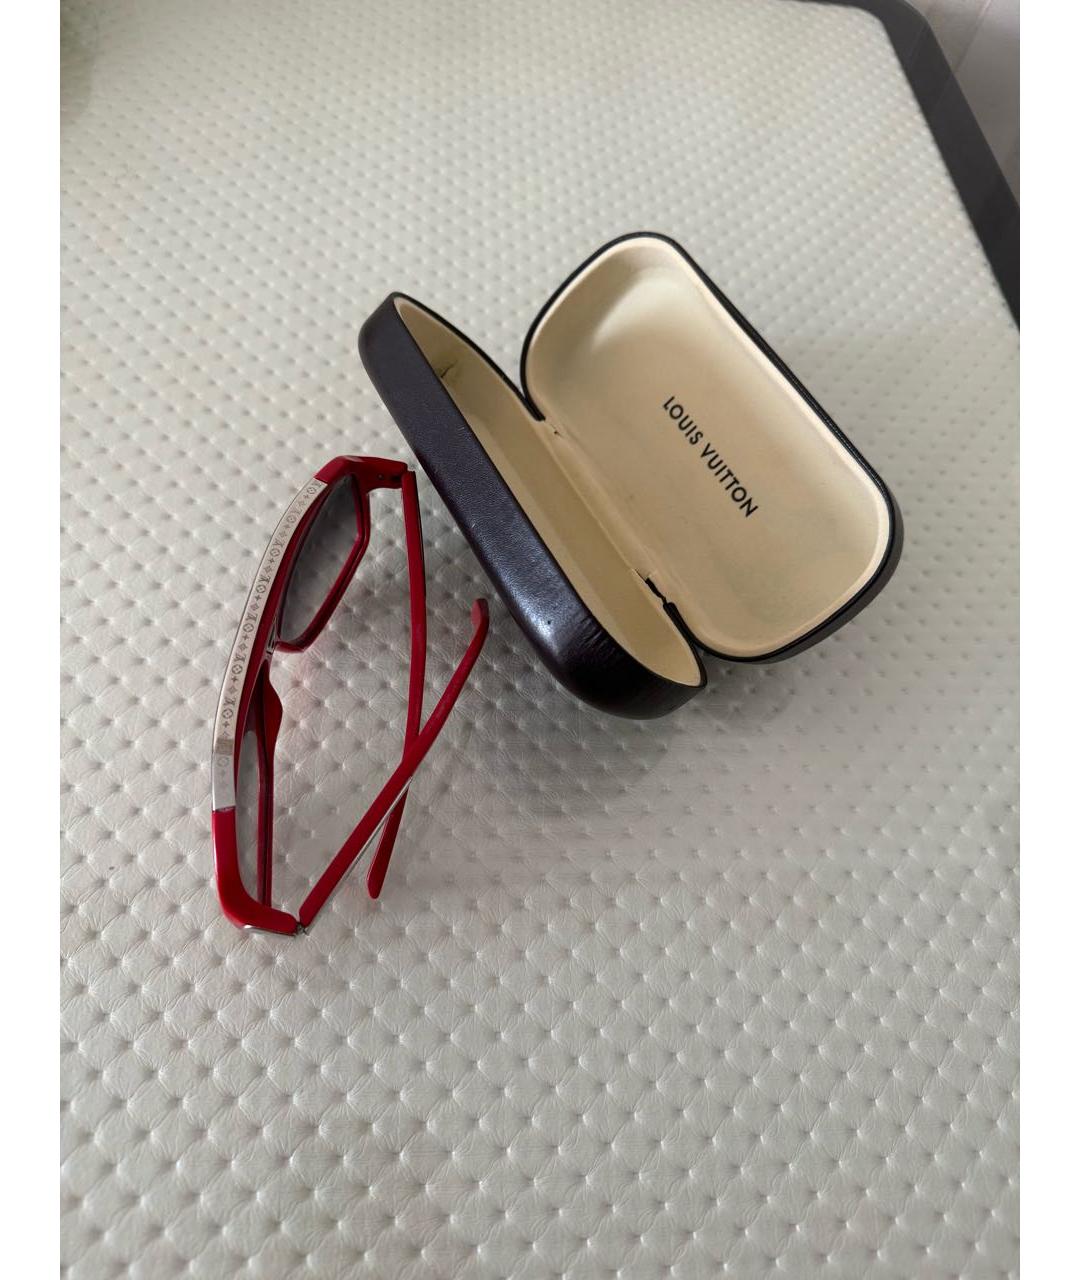 LOUIS VUITTON PRE-OWNED Красные пластиковые солнцезащитные очки, фото 5